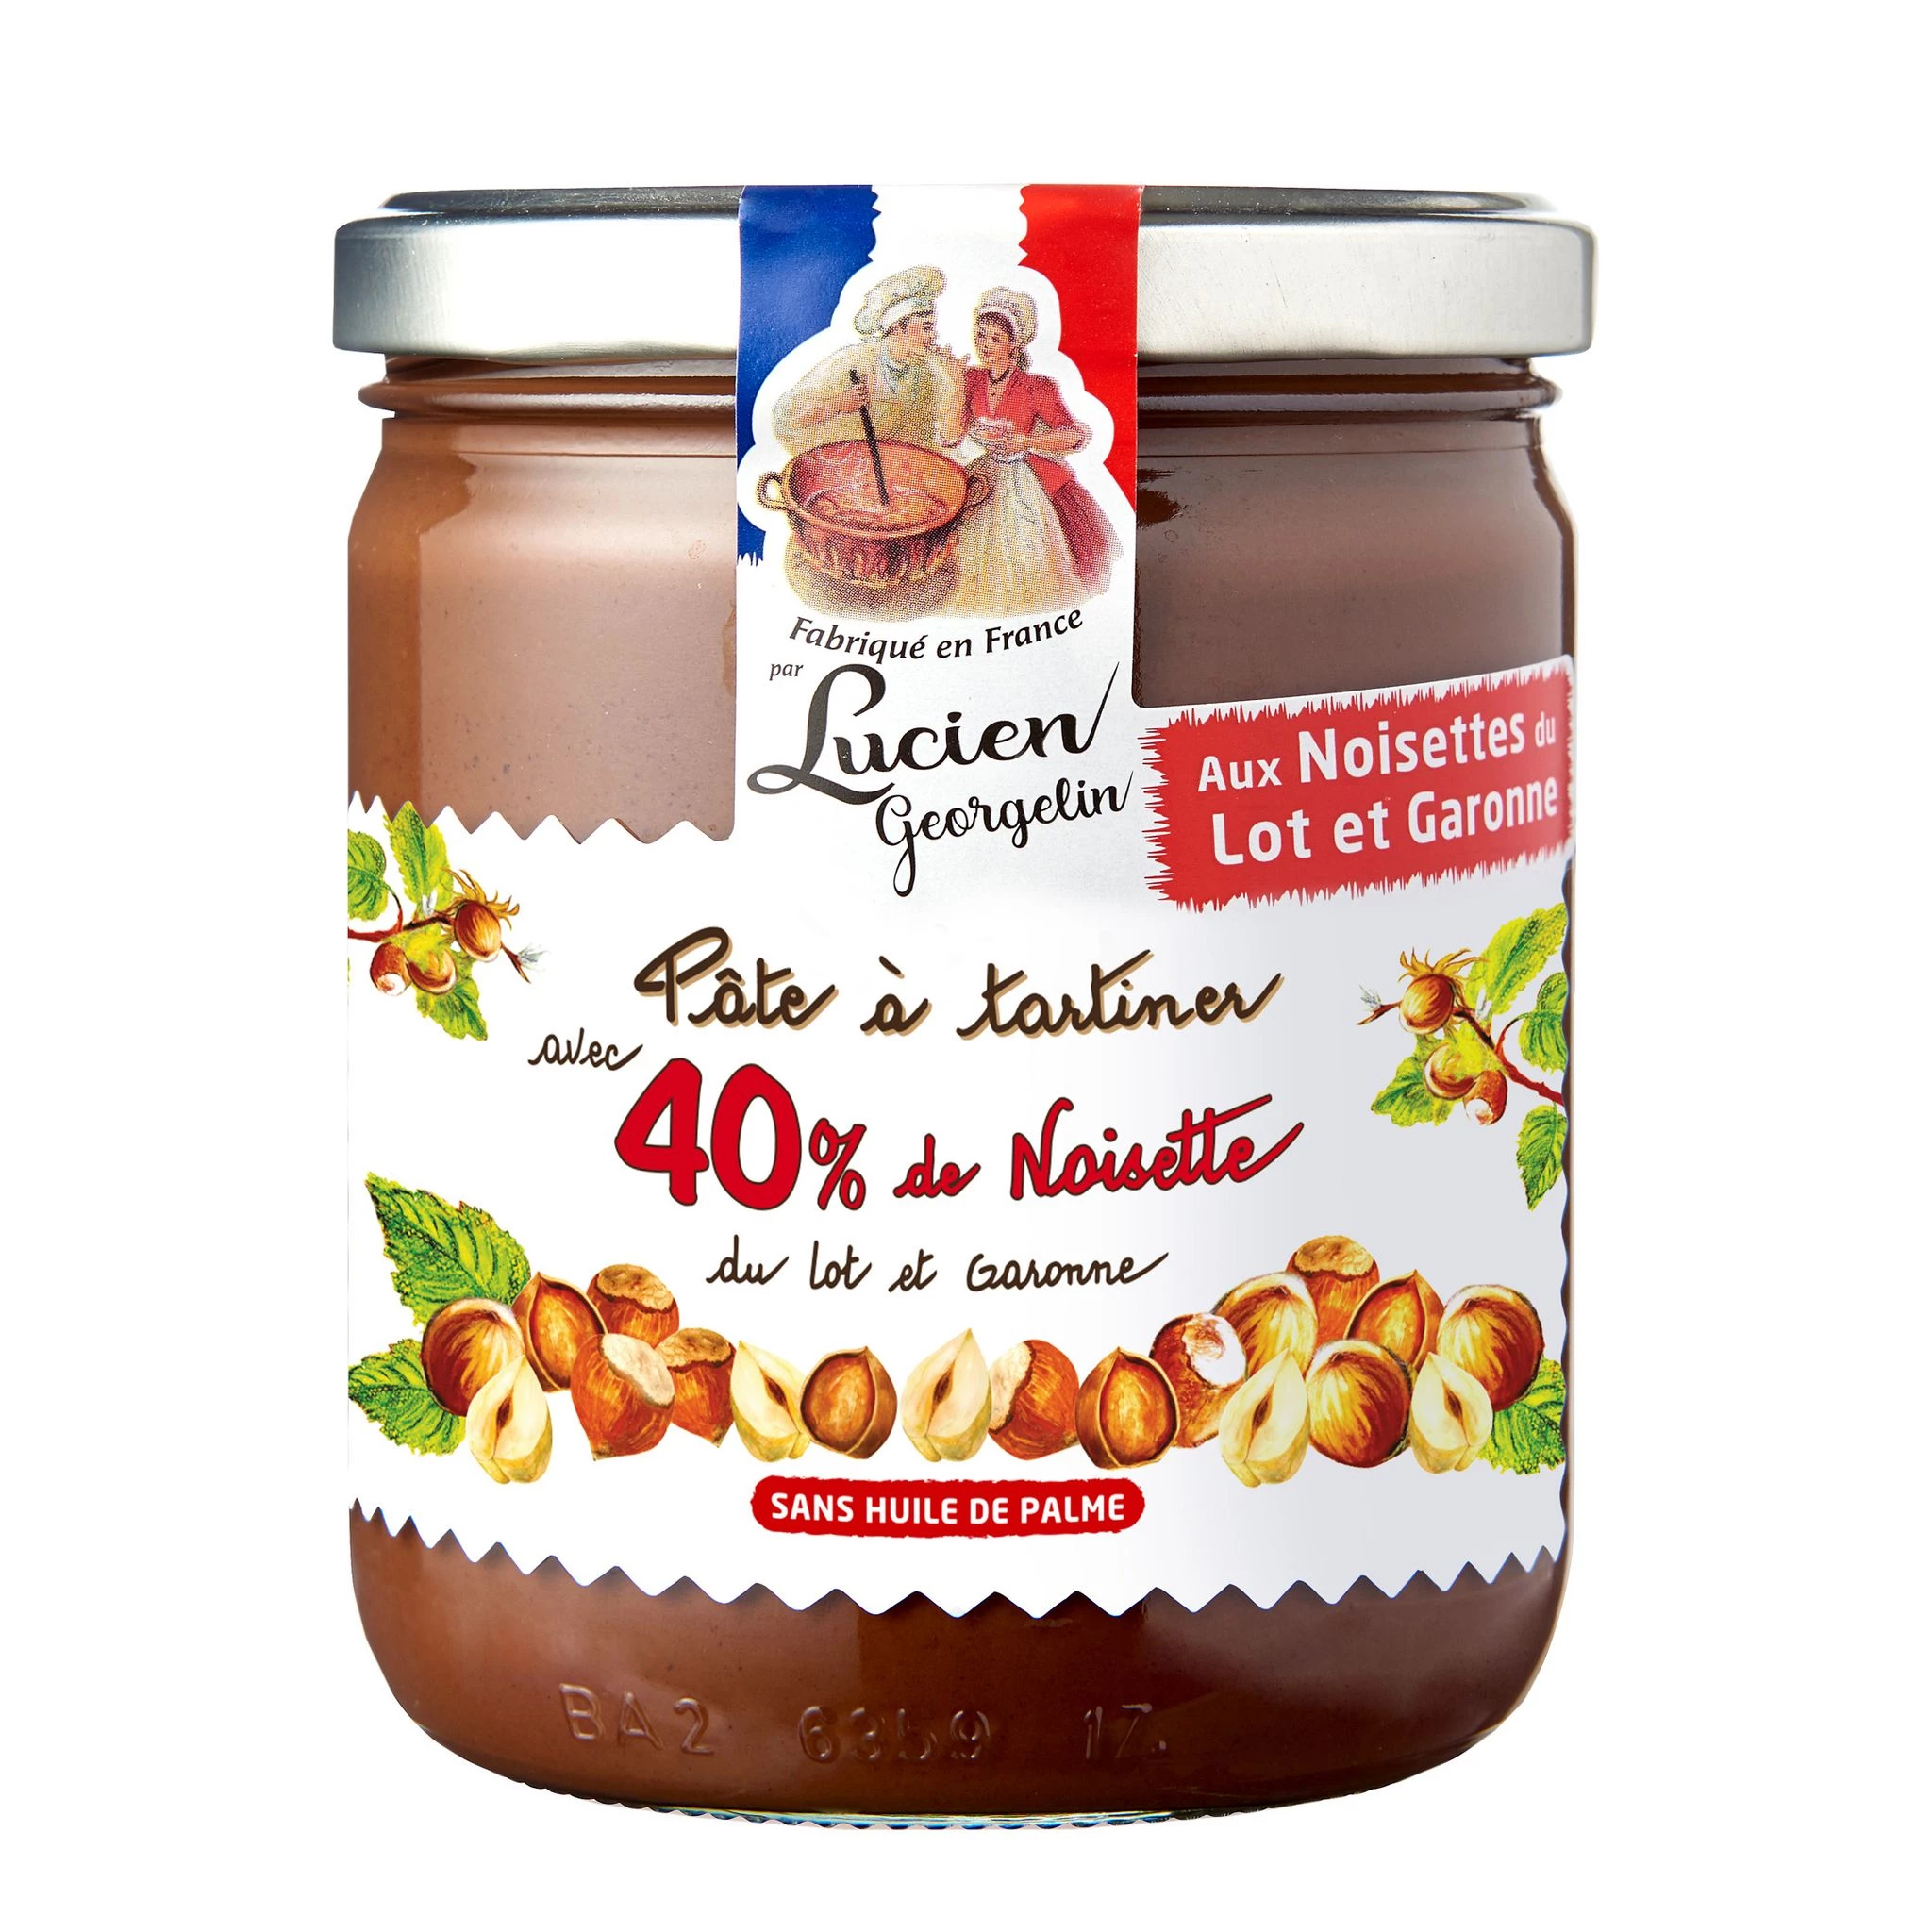 40% 来自 Lot Et Garonne 的榛子酱和可可
不含棕榈油 400g - LUCIEN GEORGELIN